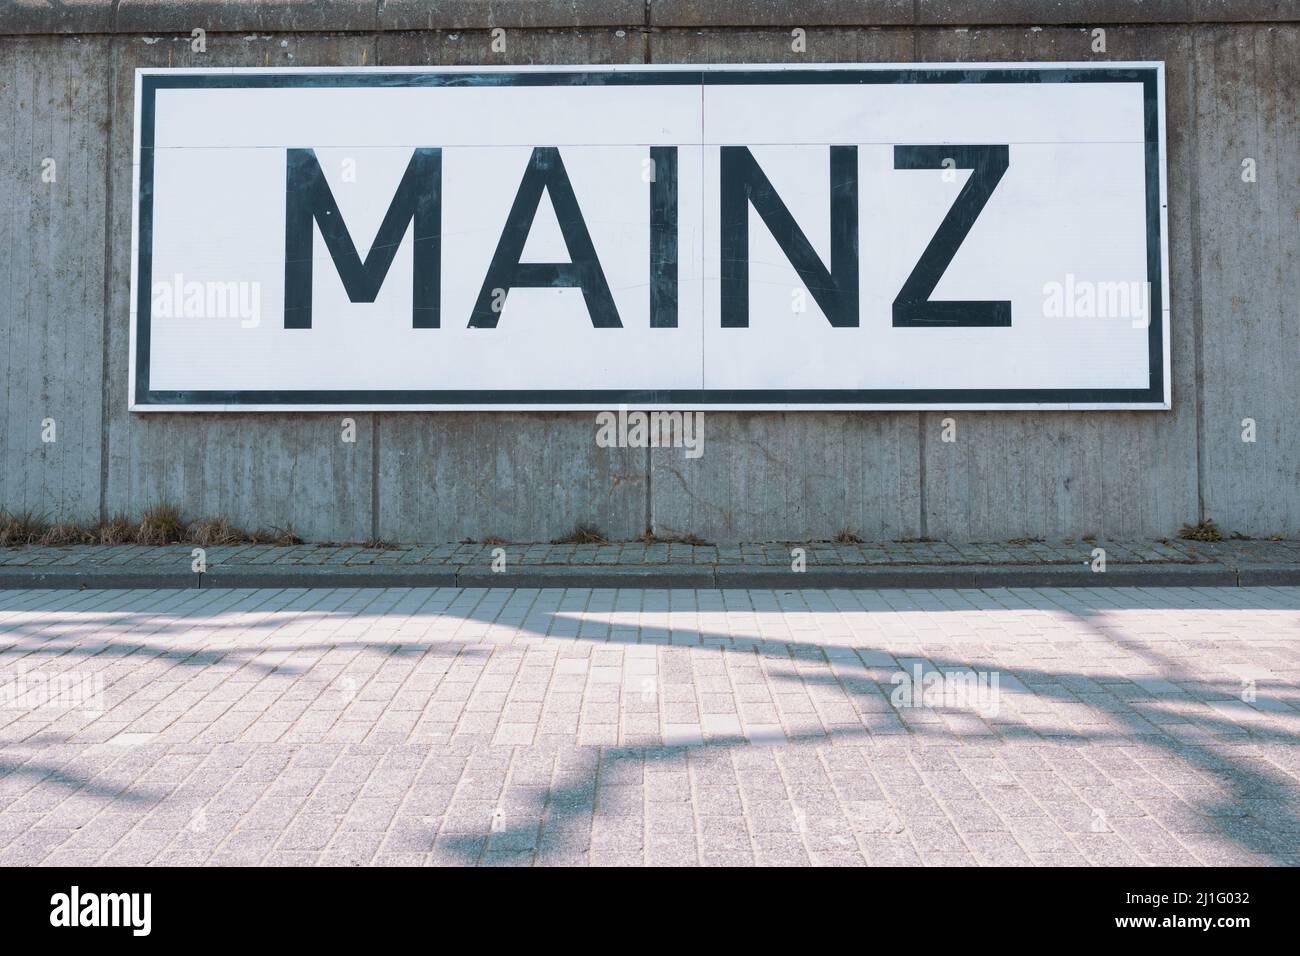 Stadtschild von Mainz hängt an einer Wand in der Nähe des Flussschildes Rhein, um die Position der Bootsfahrer in Deutschland anzuzeigen Stockfoto